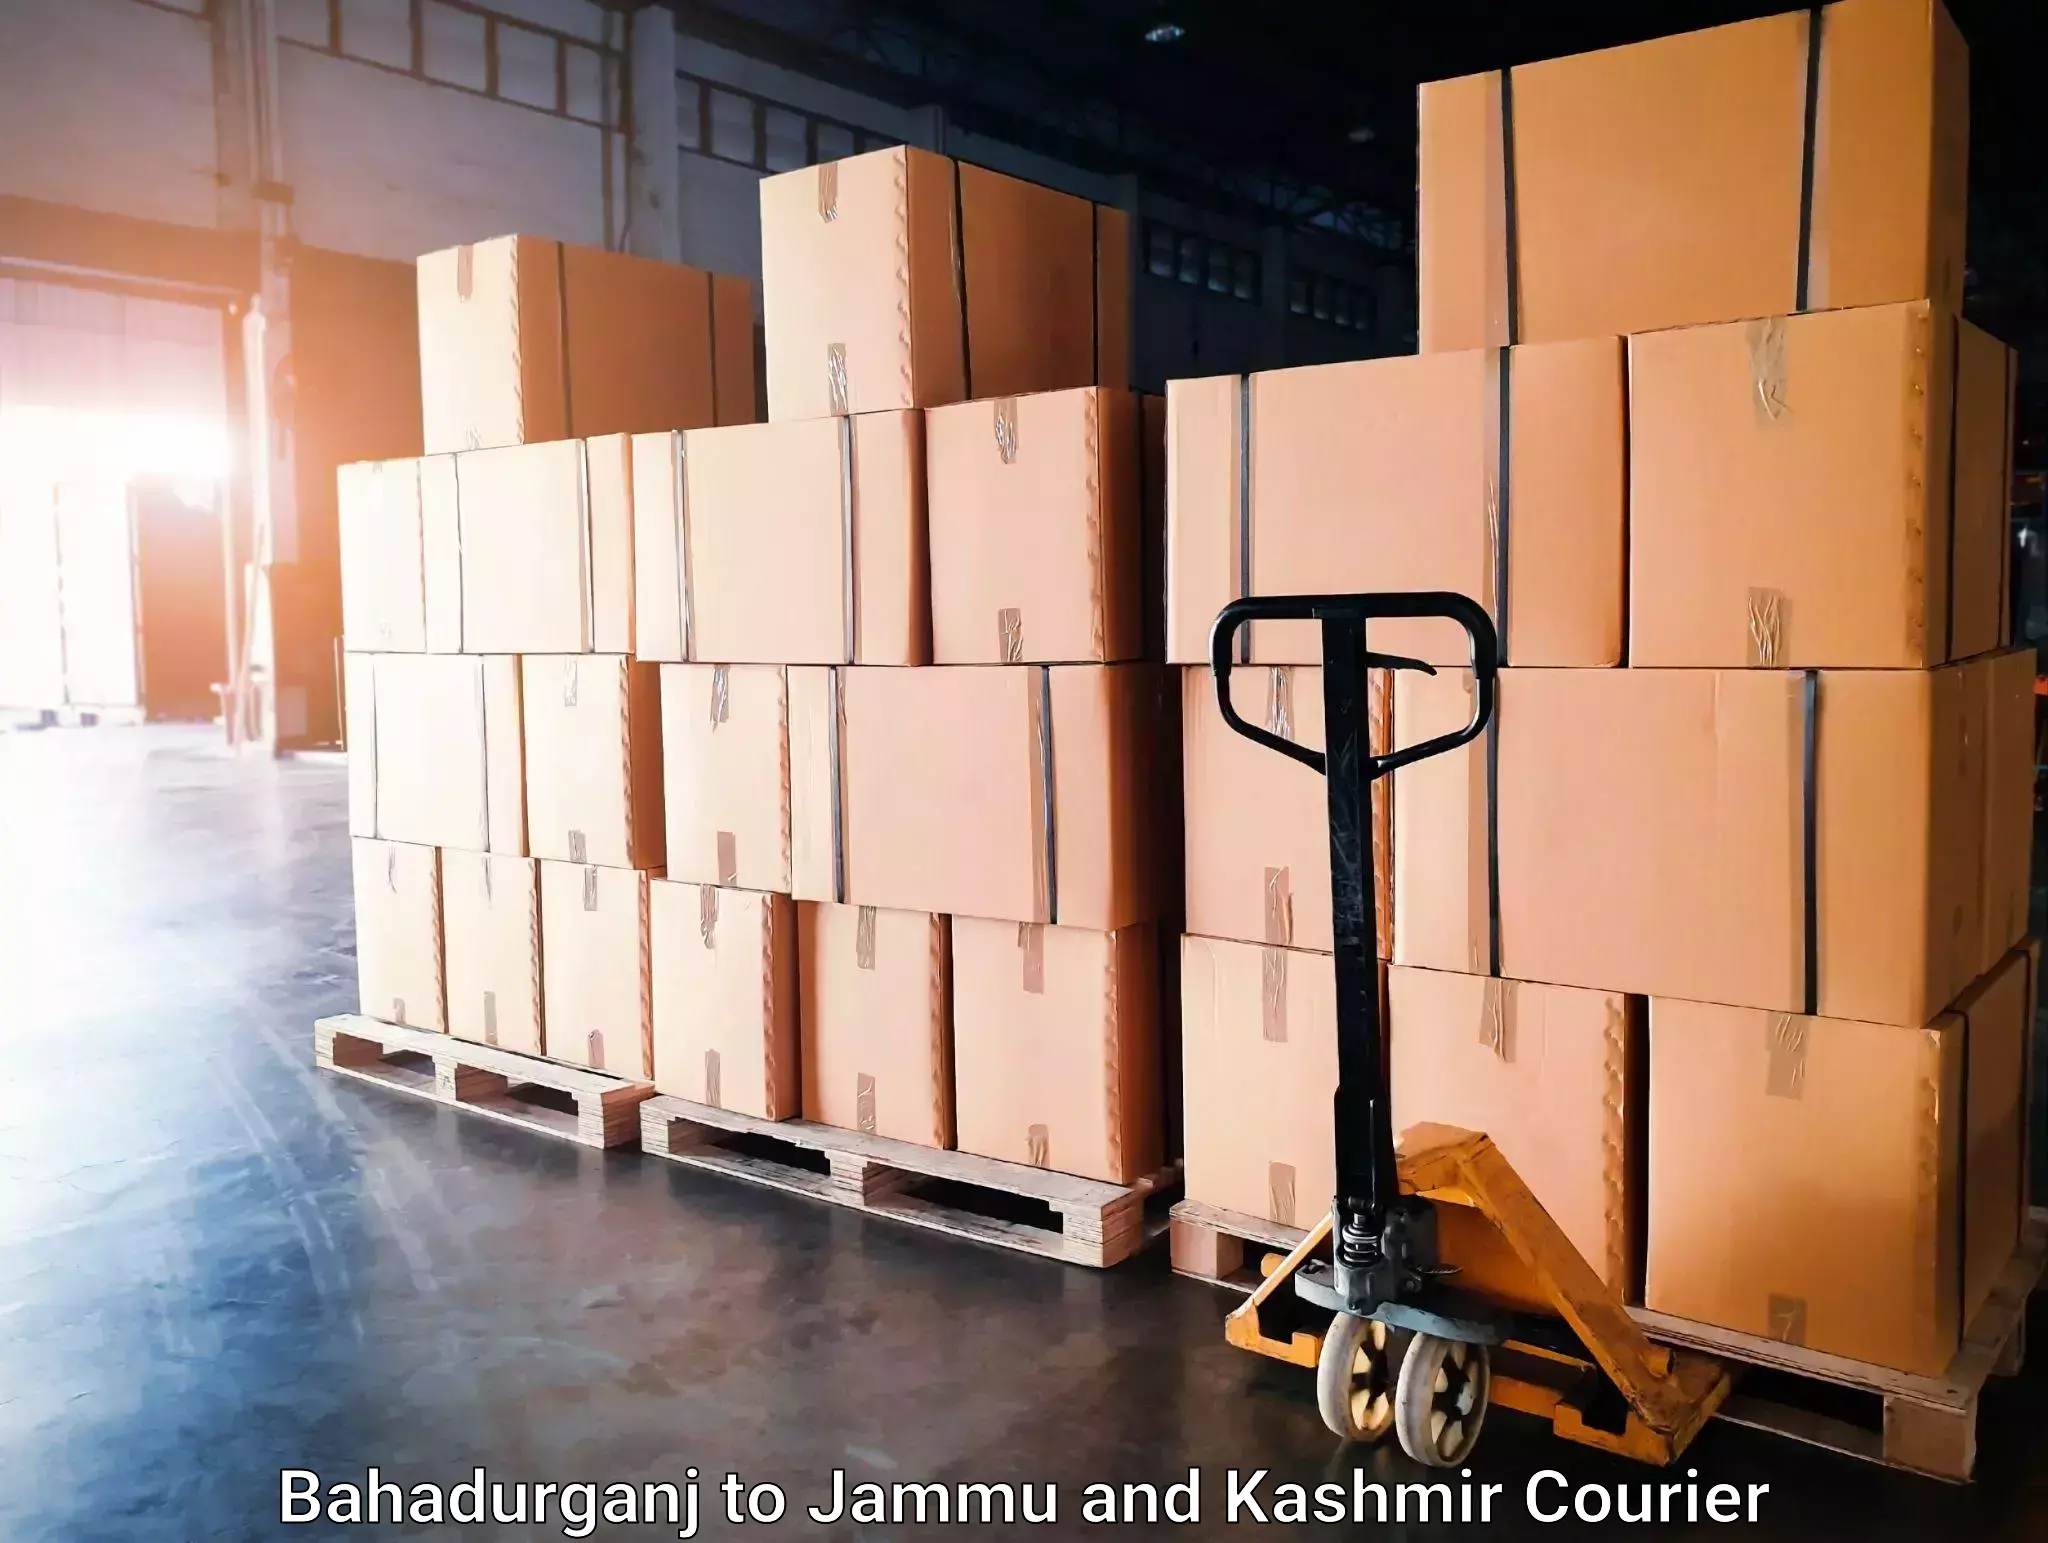 Trusted relocation experts Bahadurganj to Jammu and Kashmir